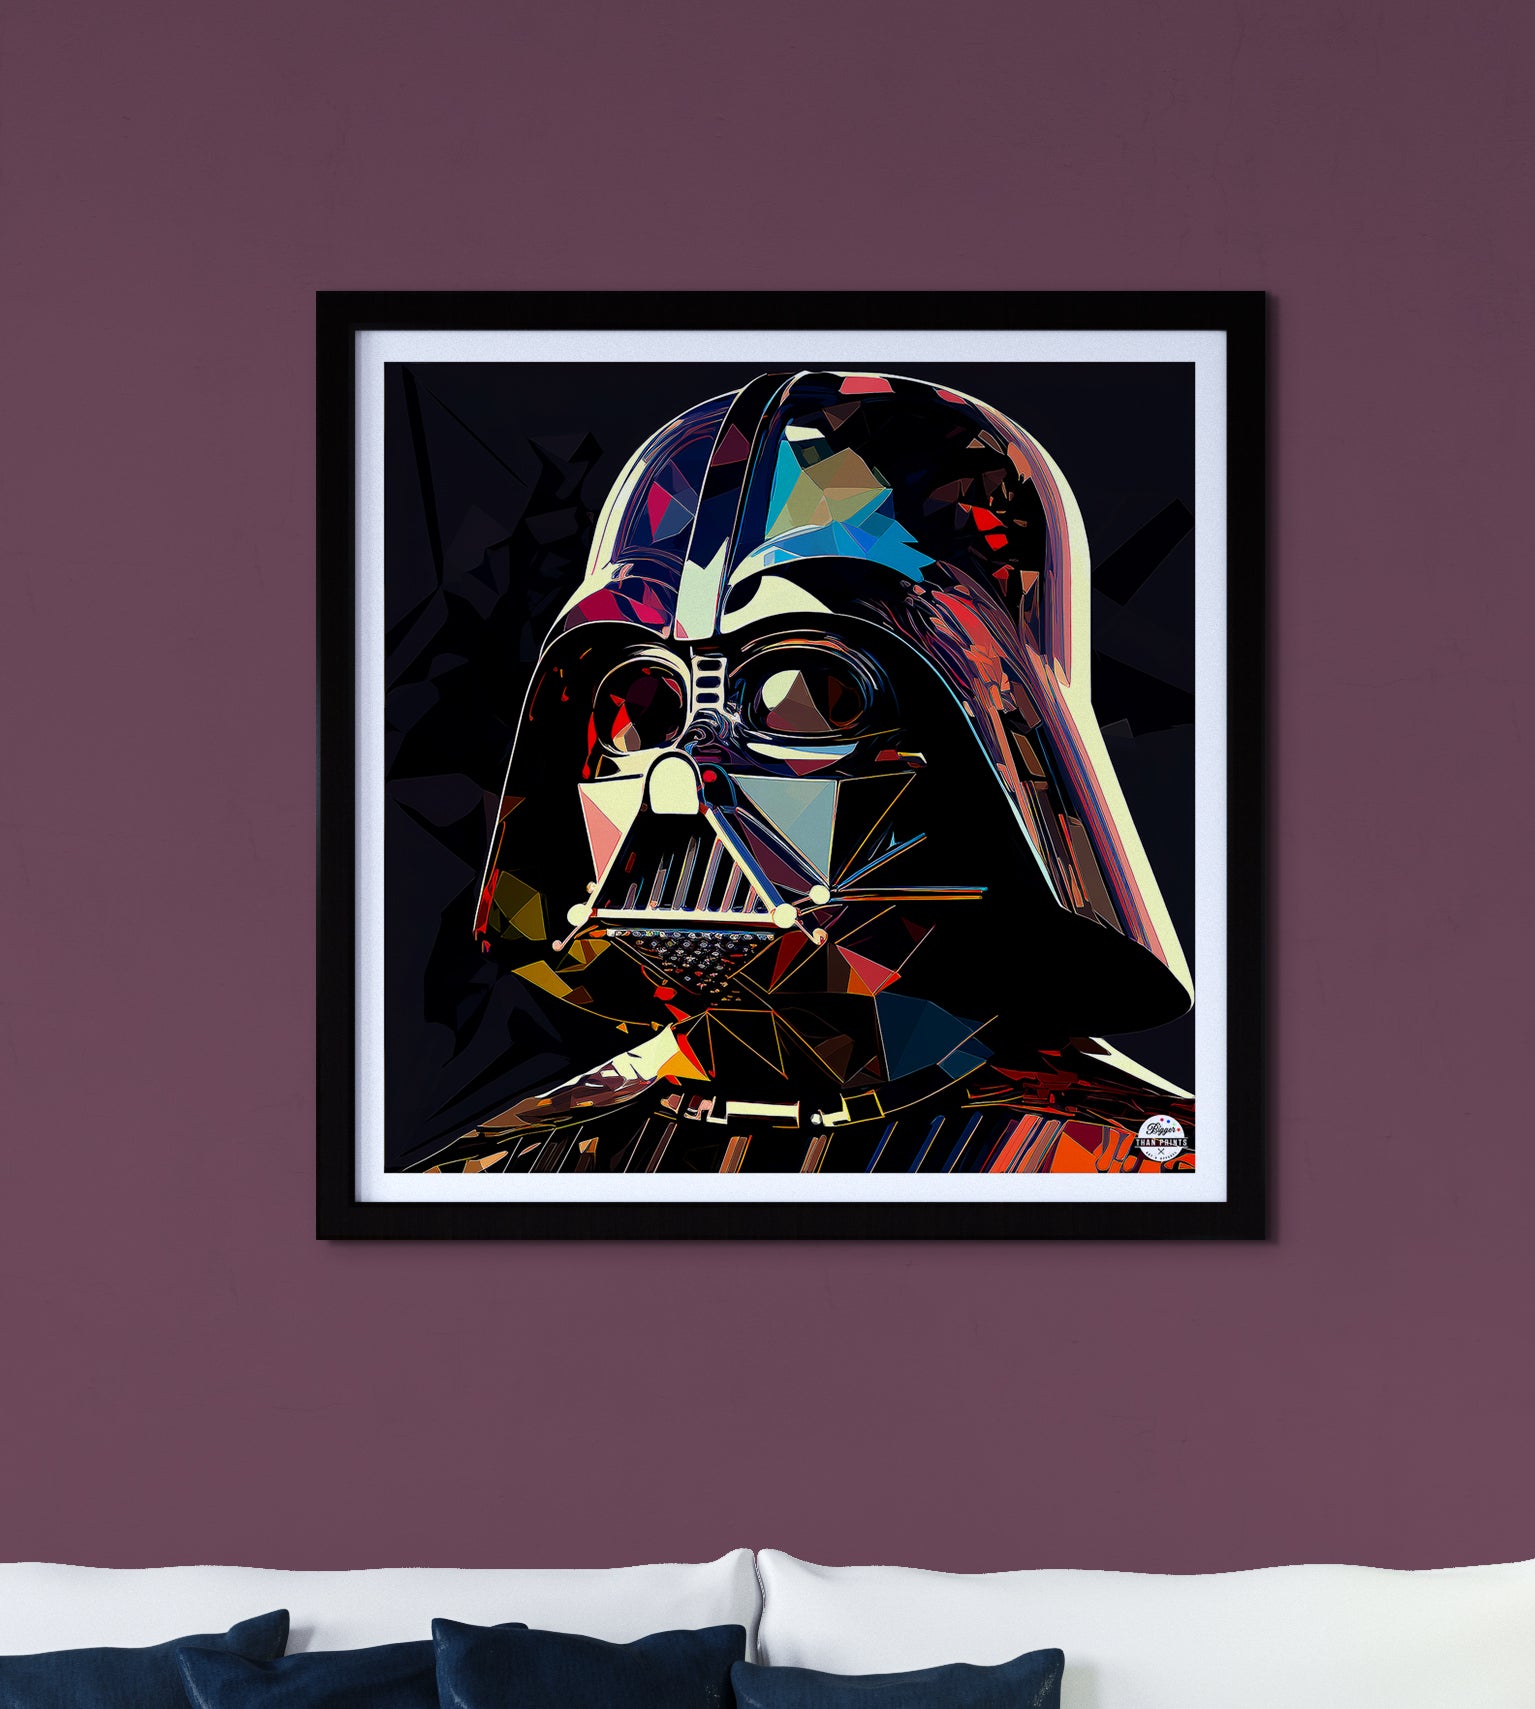 Star Wars Darth Vader Detailed Portrait Throw Pillow